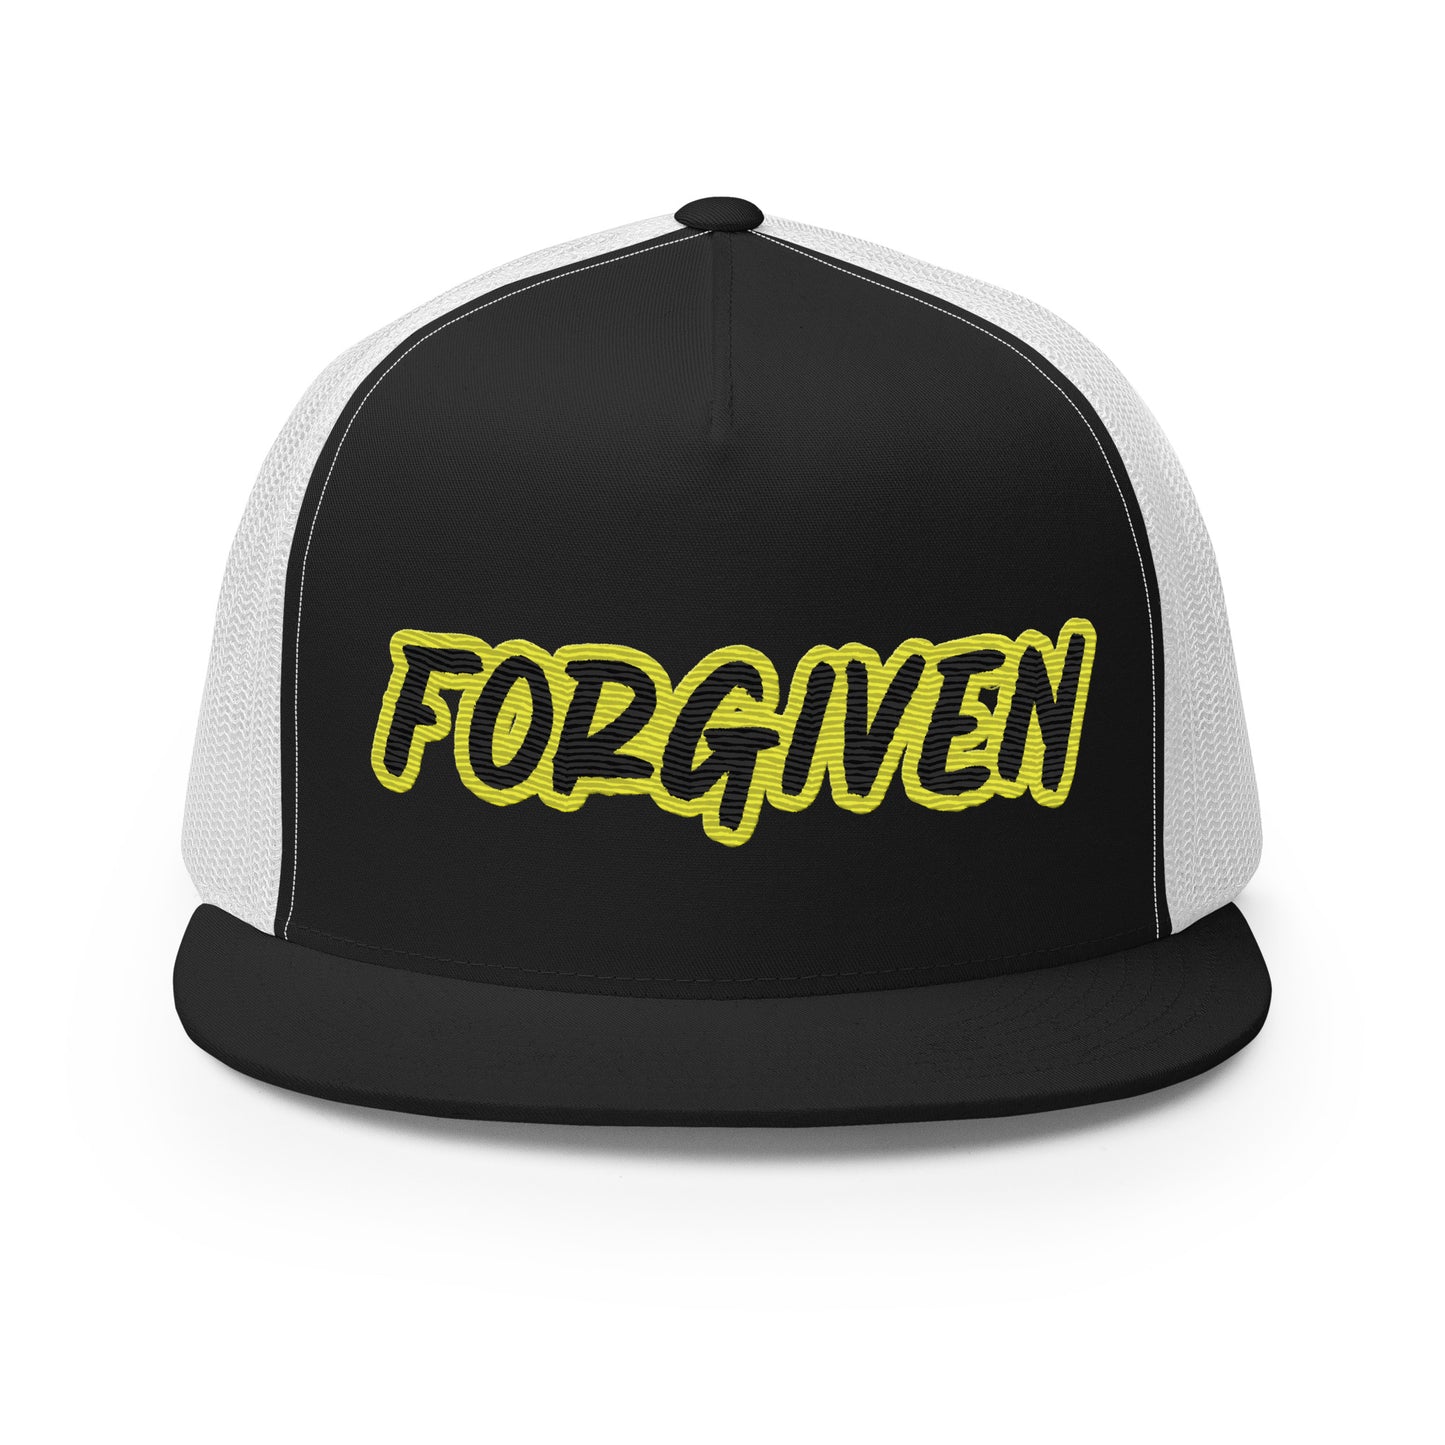 Forgiven- Trucker Cap